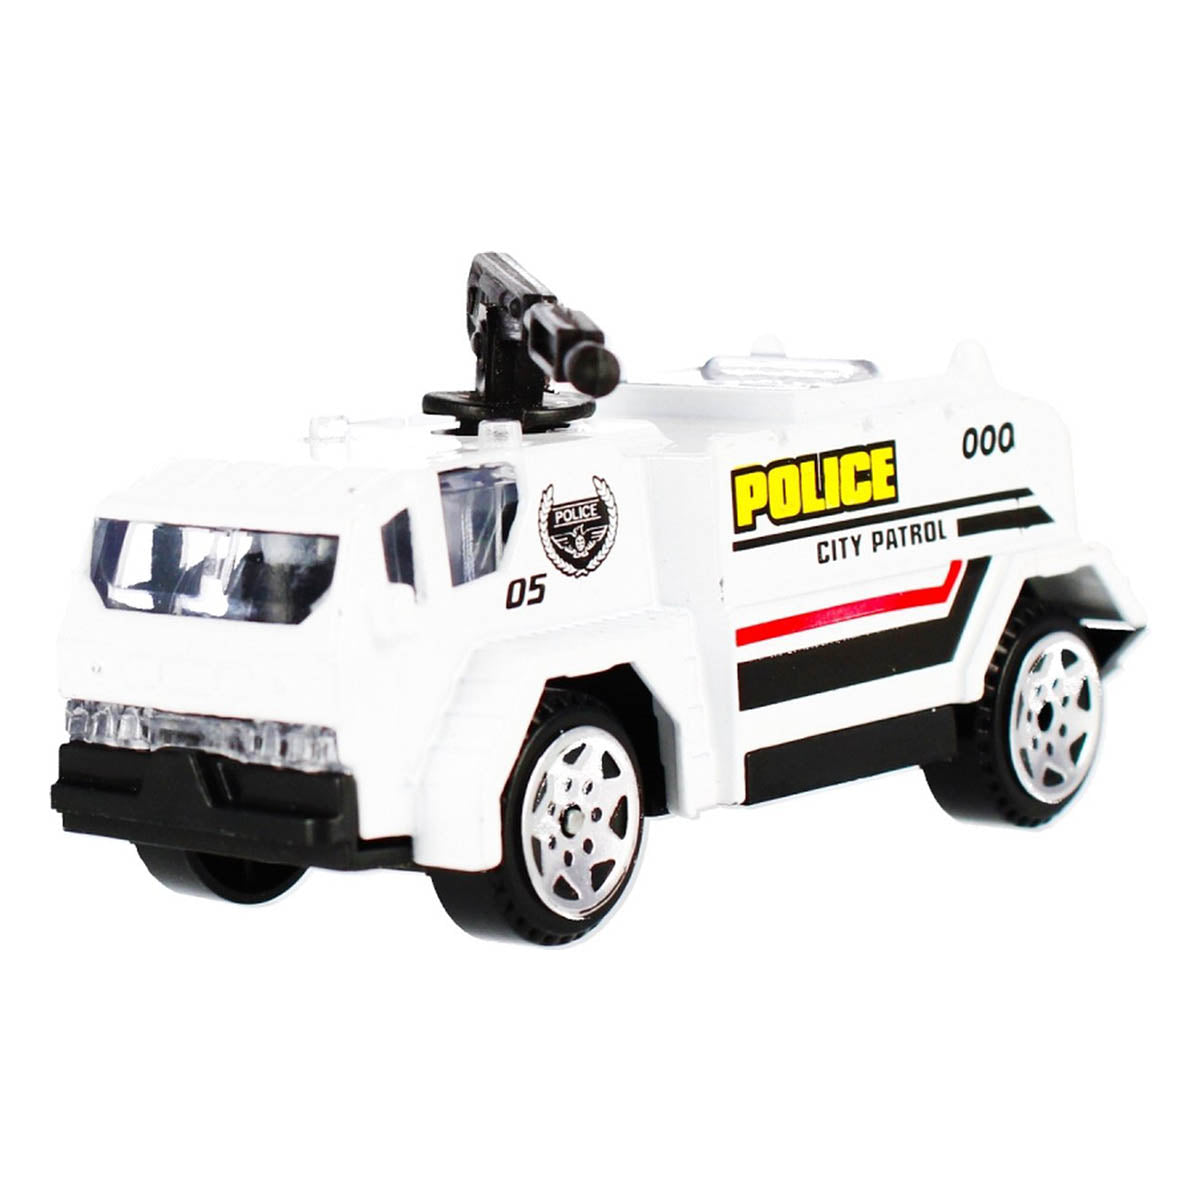 Ariko Parking Police - Avec hélicoptère, voiture à jet d'eau et autres voitures sympas - 1:64